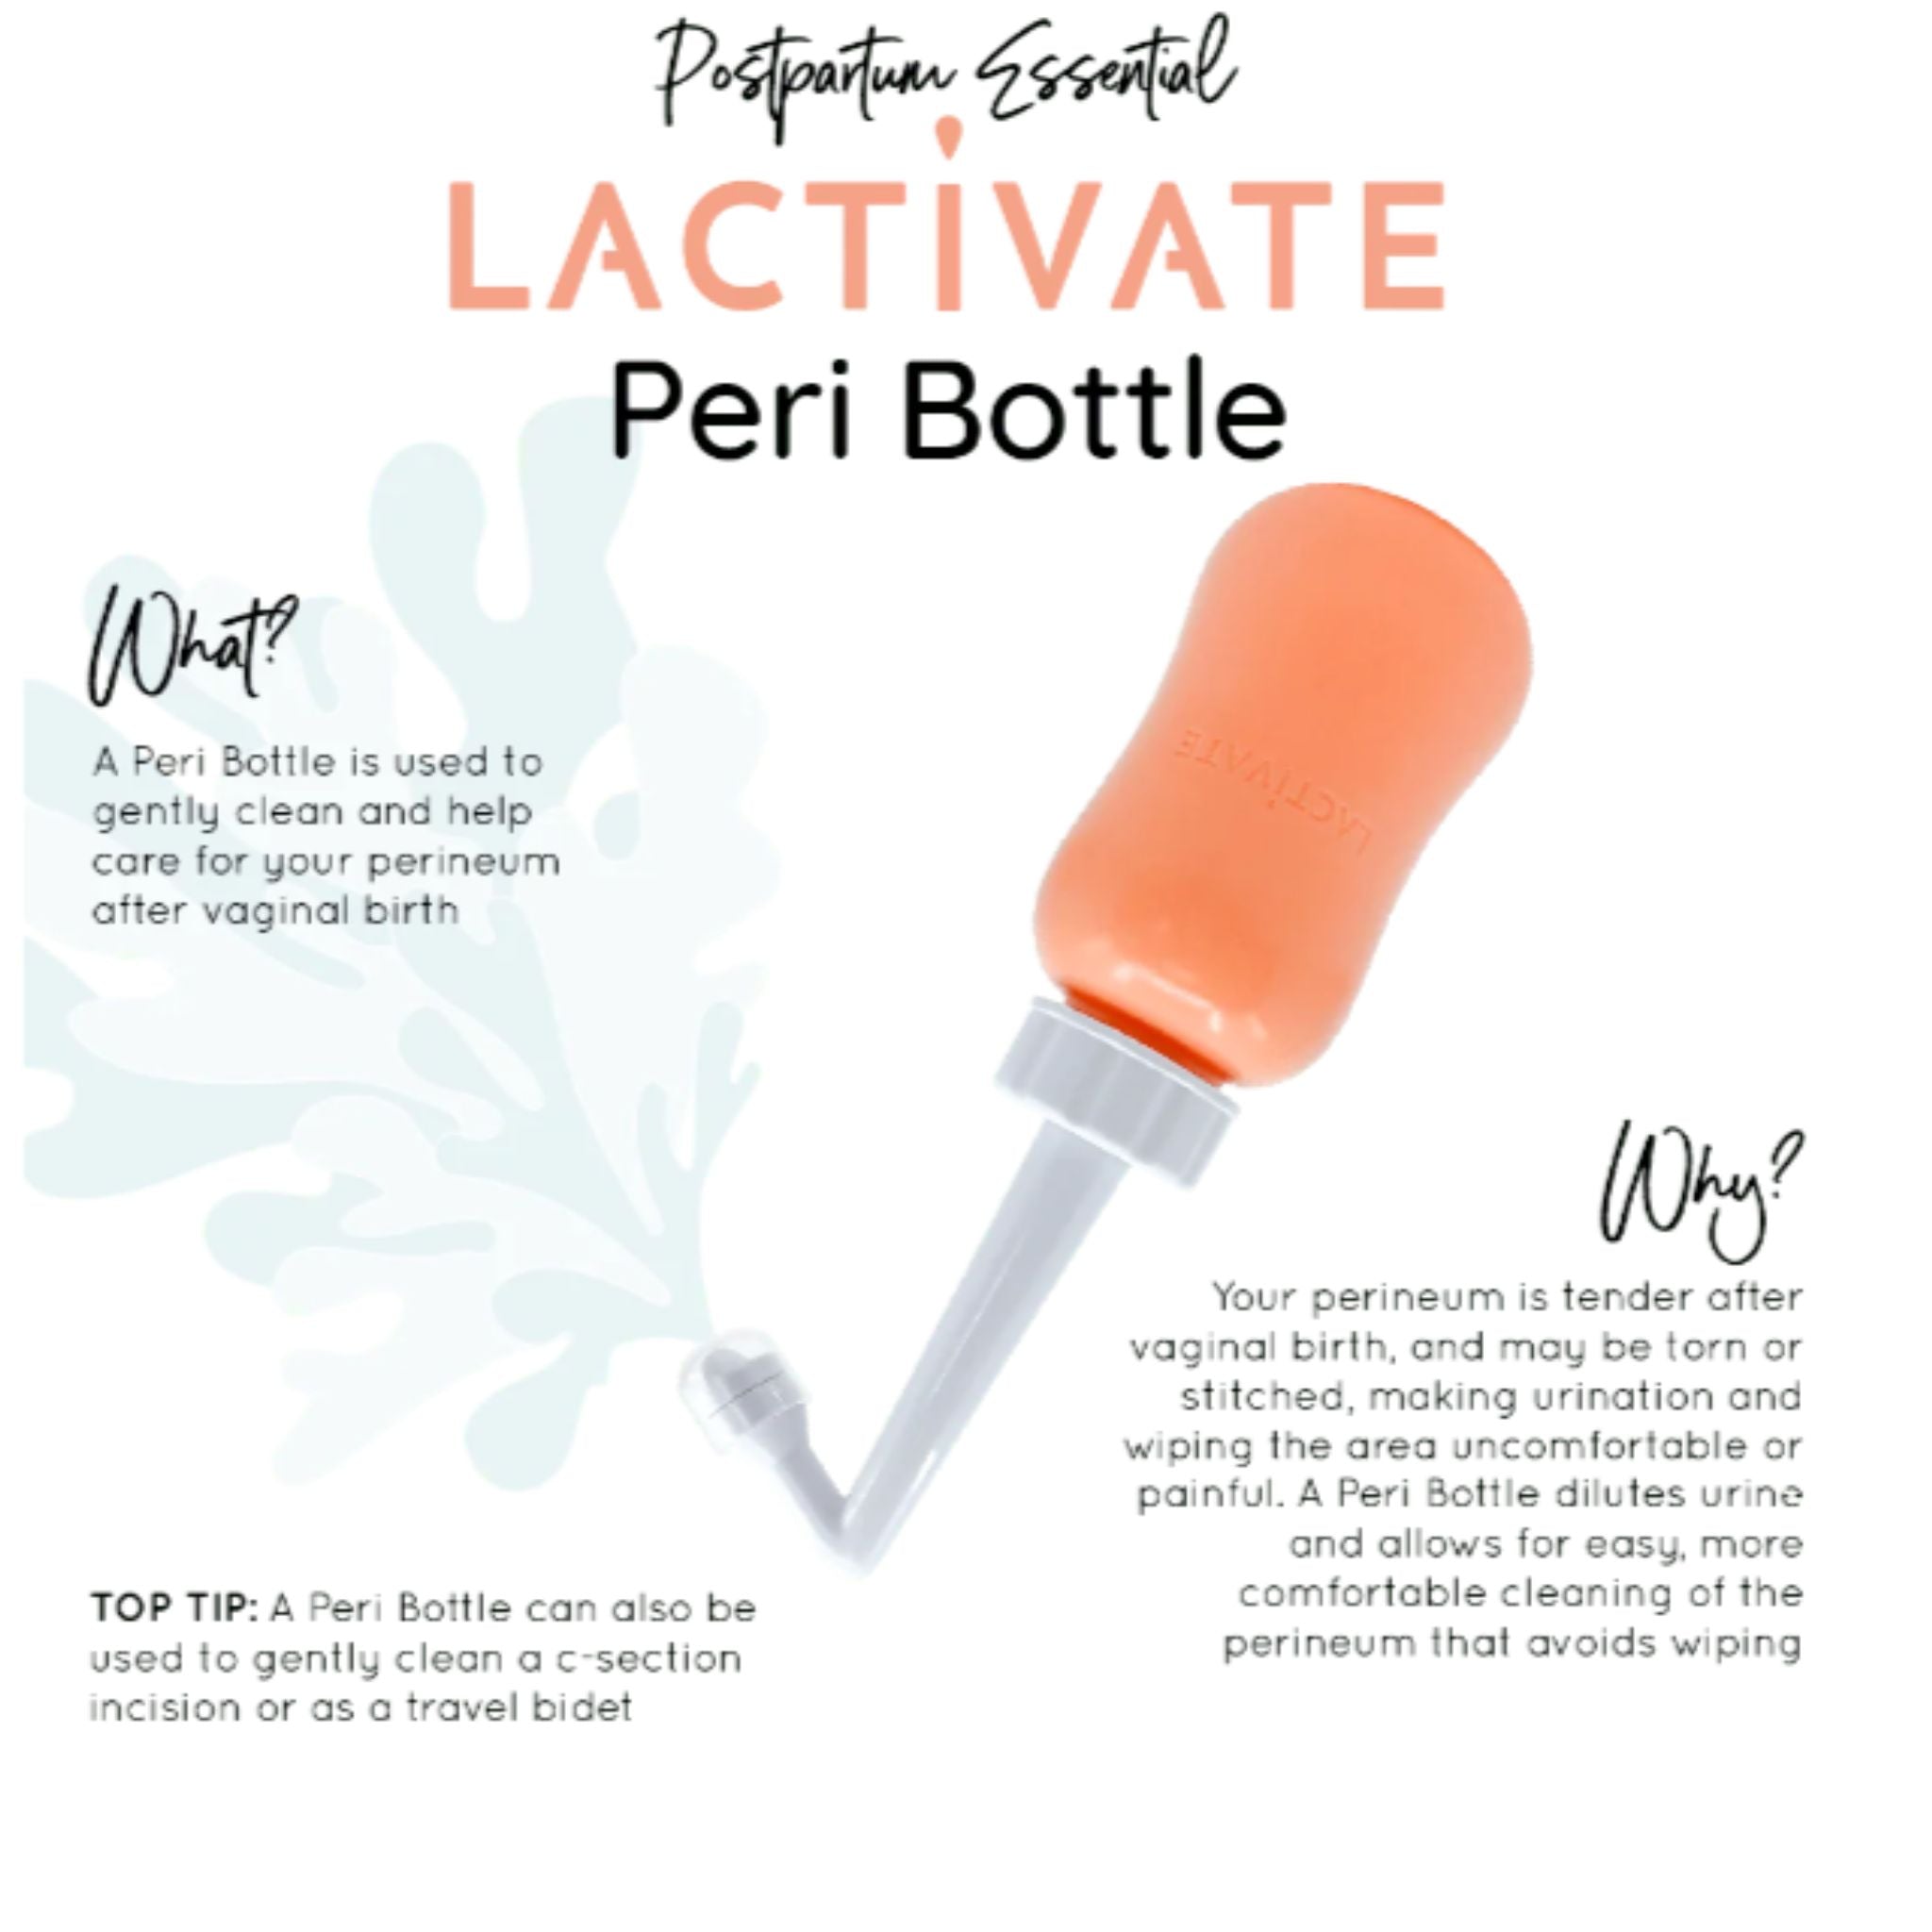 postpartum peri bottle